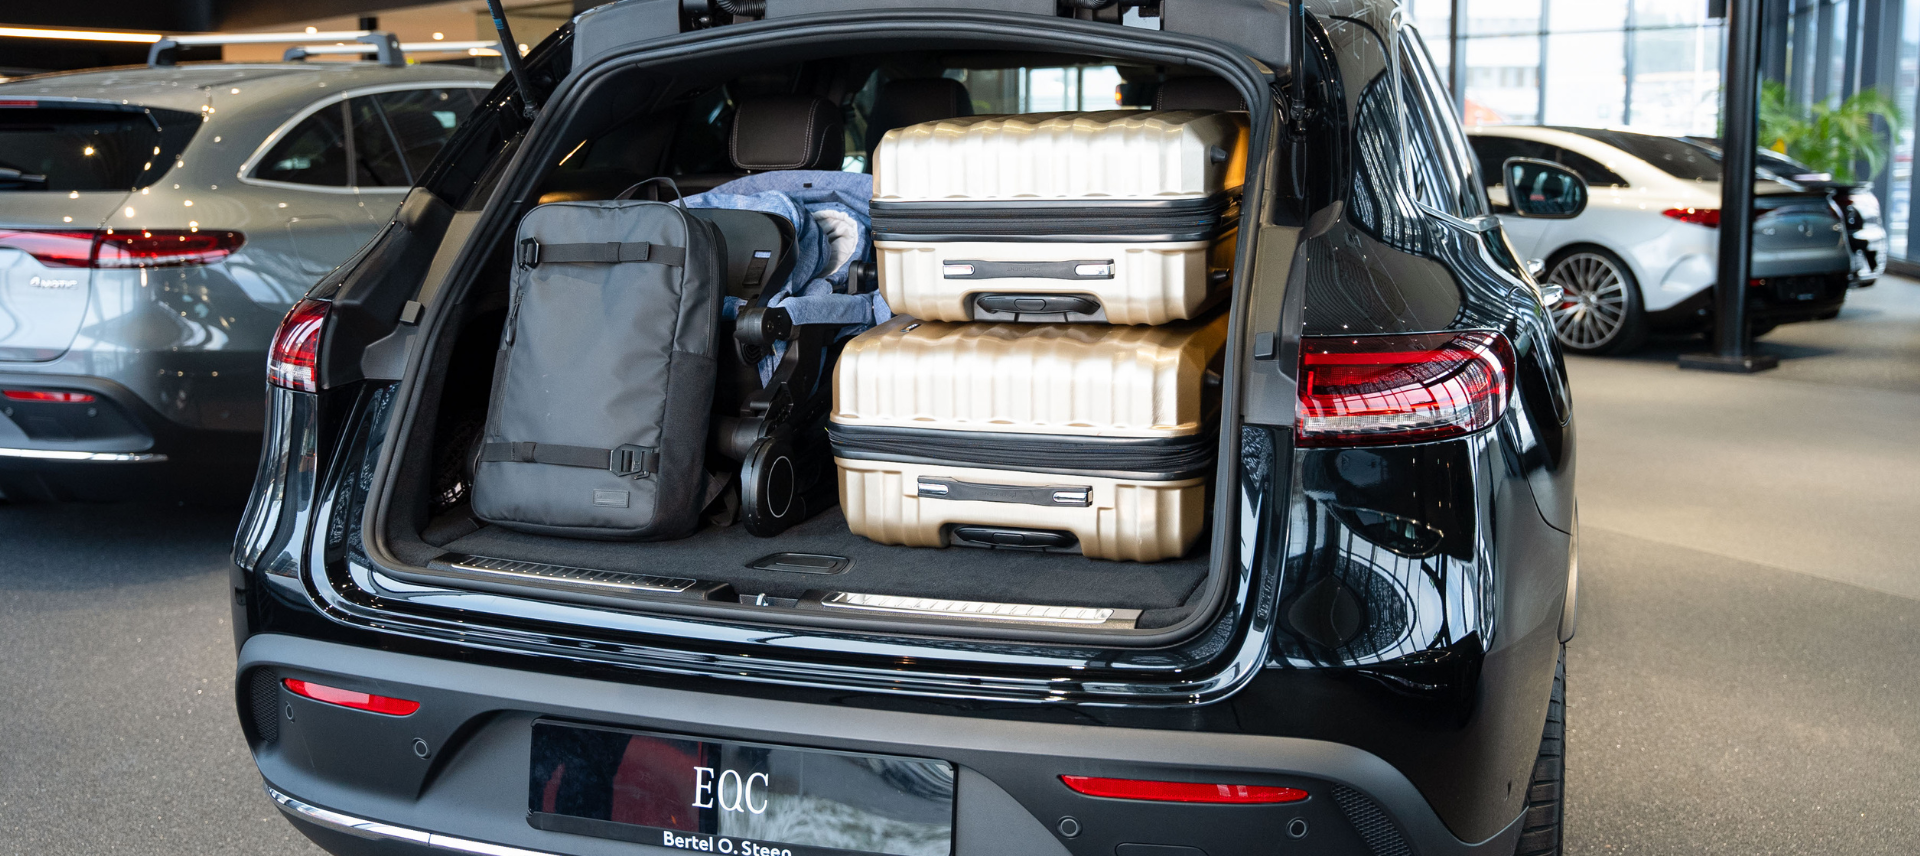 Åpent bagasjerom på EQC 400 med barnevogn og kofferter.